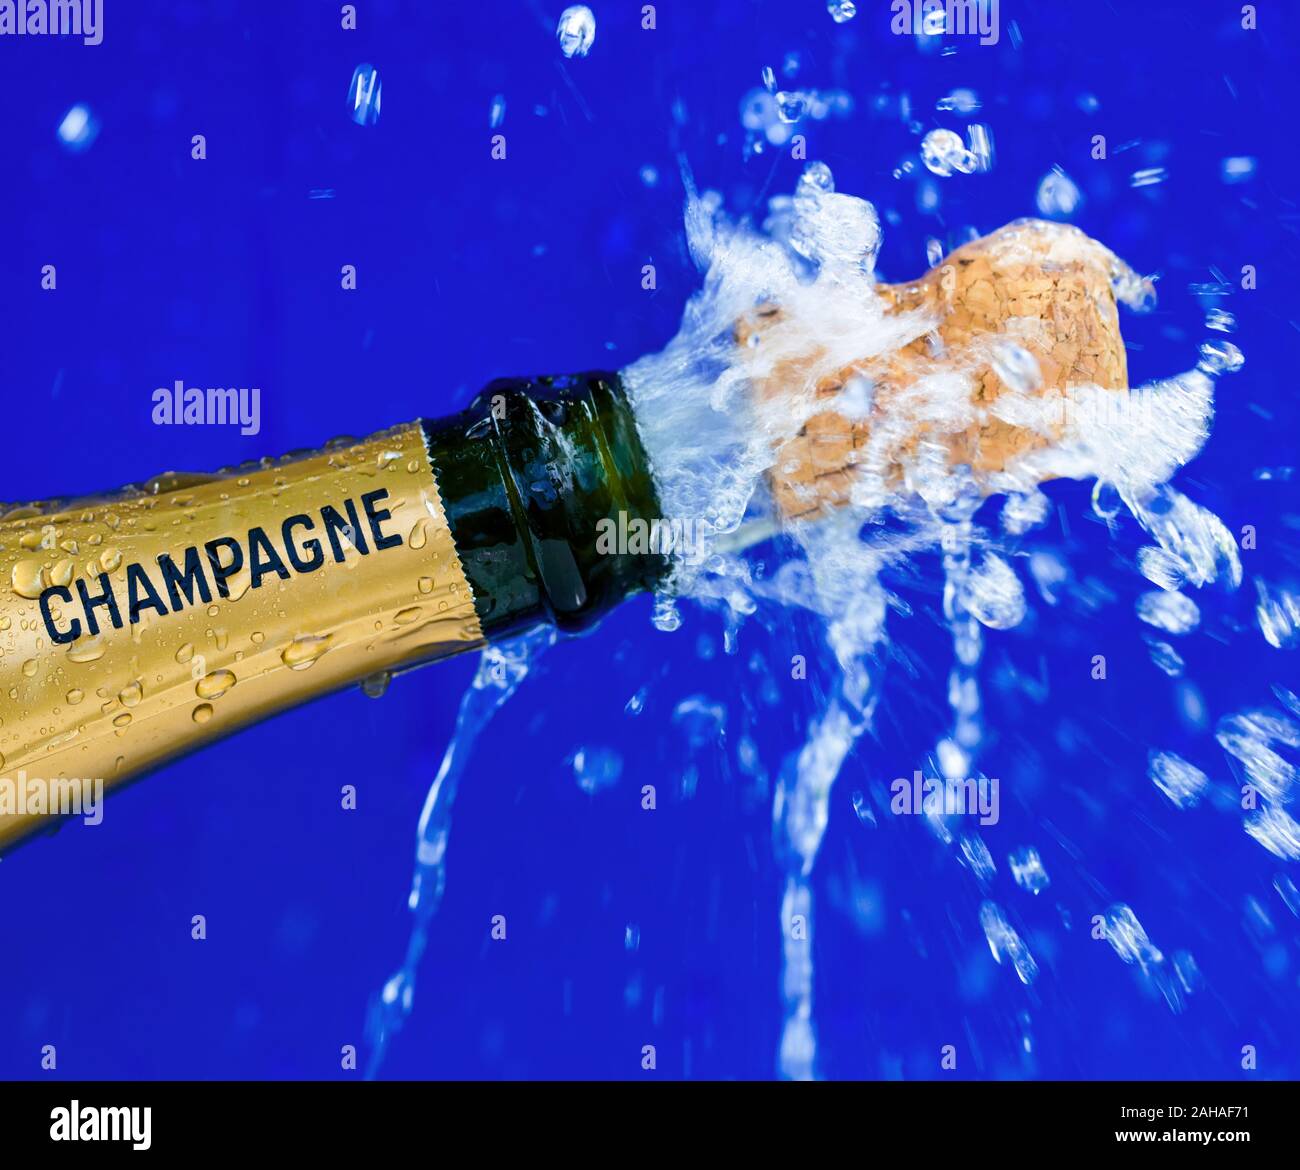 Eine Flasche Champagner wird geöffnet. Symbolfoto für Eröffnung, feiern und Jahreswechsel Stockfoto